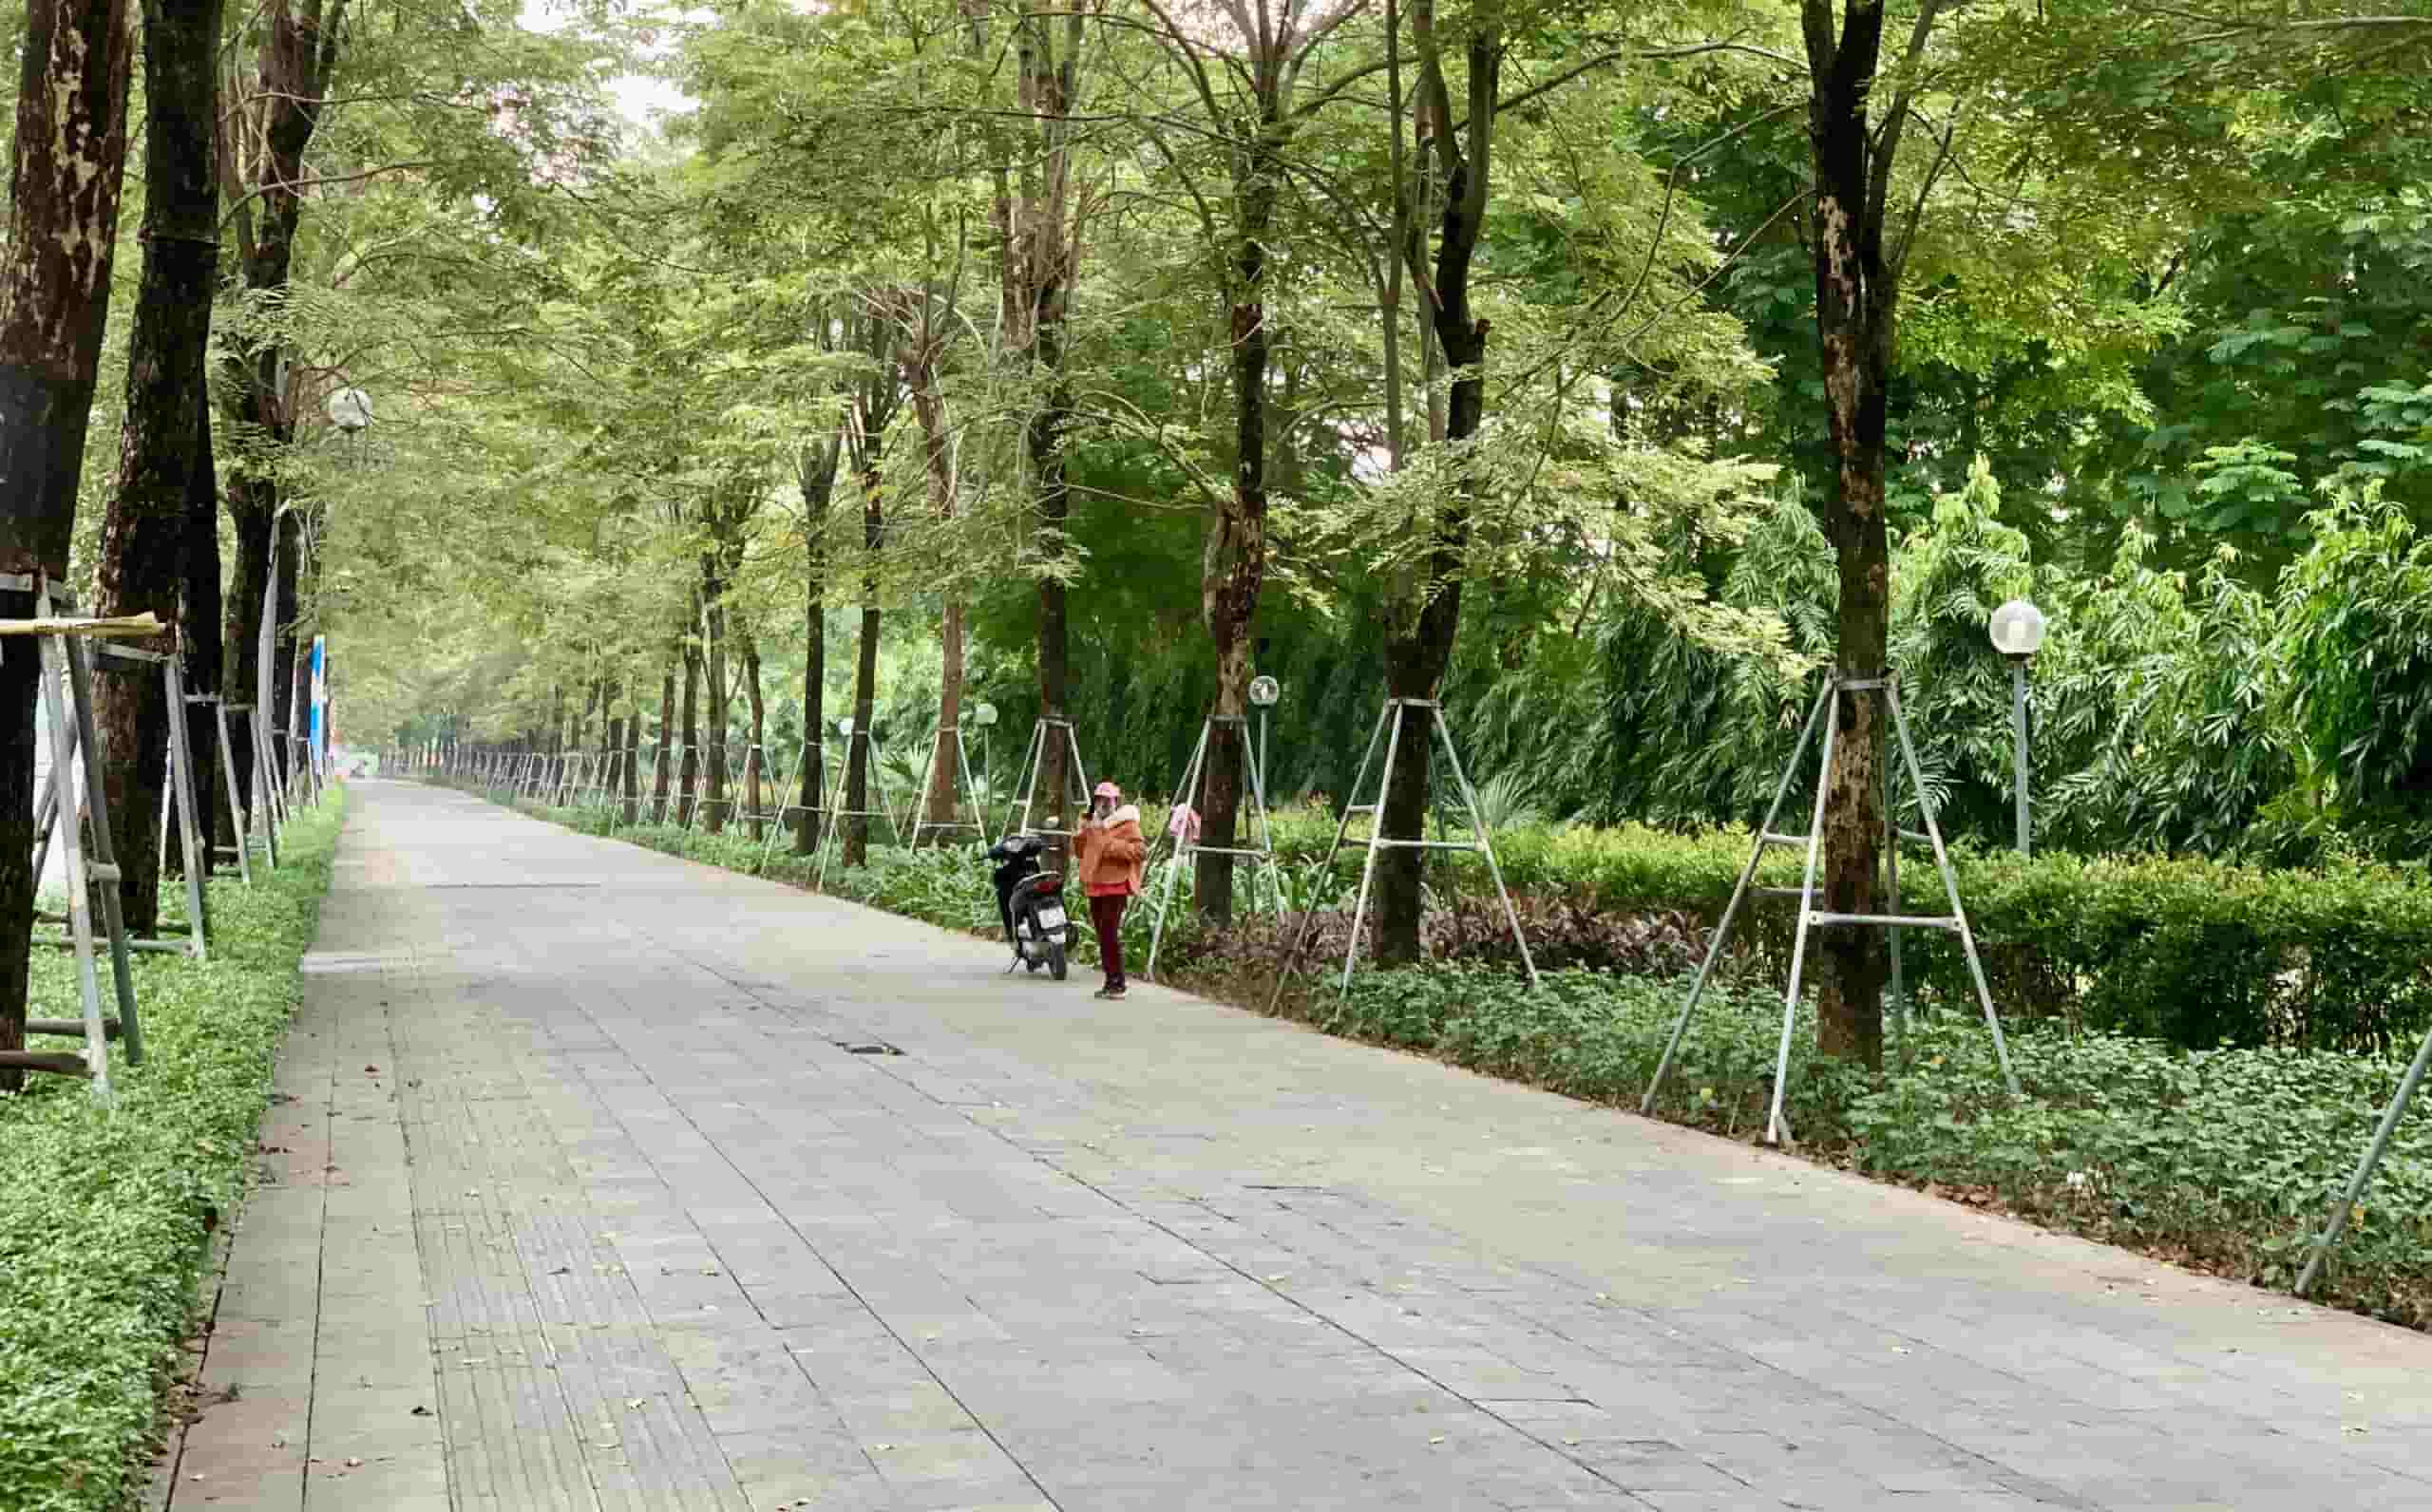 Với chiều rộng 7m, khu vực vỉa hè xung quanh công viên Hoà Bình thích hợp cải tạo thành làn đường cho xe đạp. Ảnh: Nhật Minh